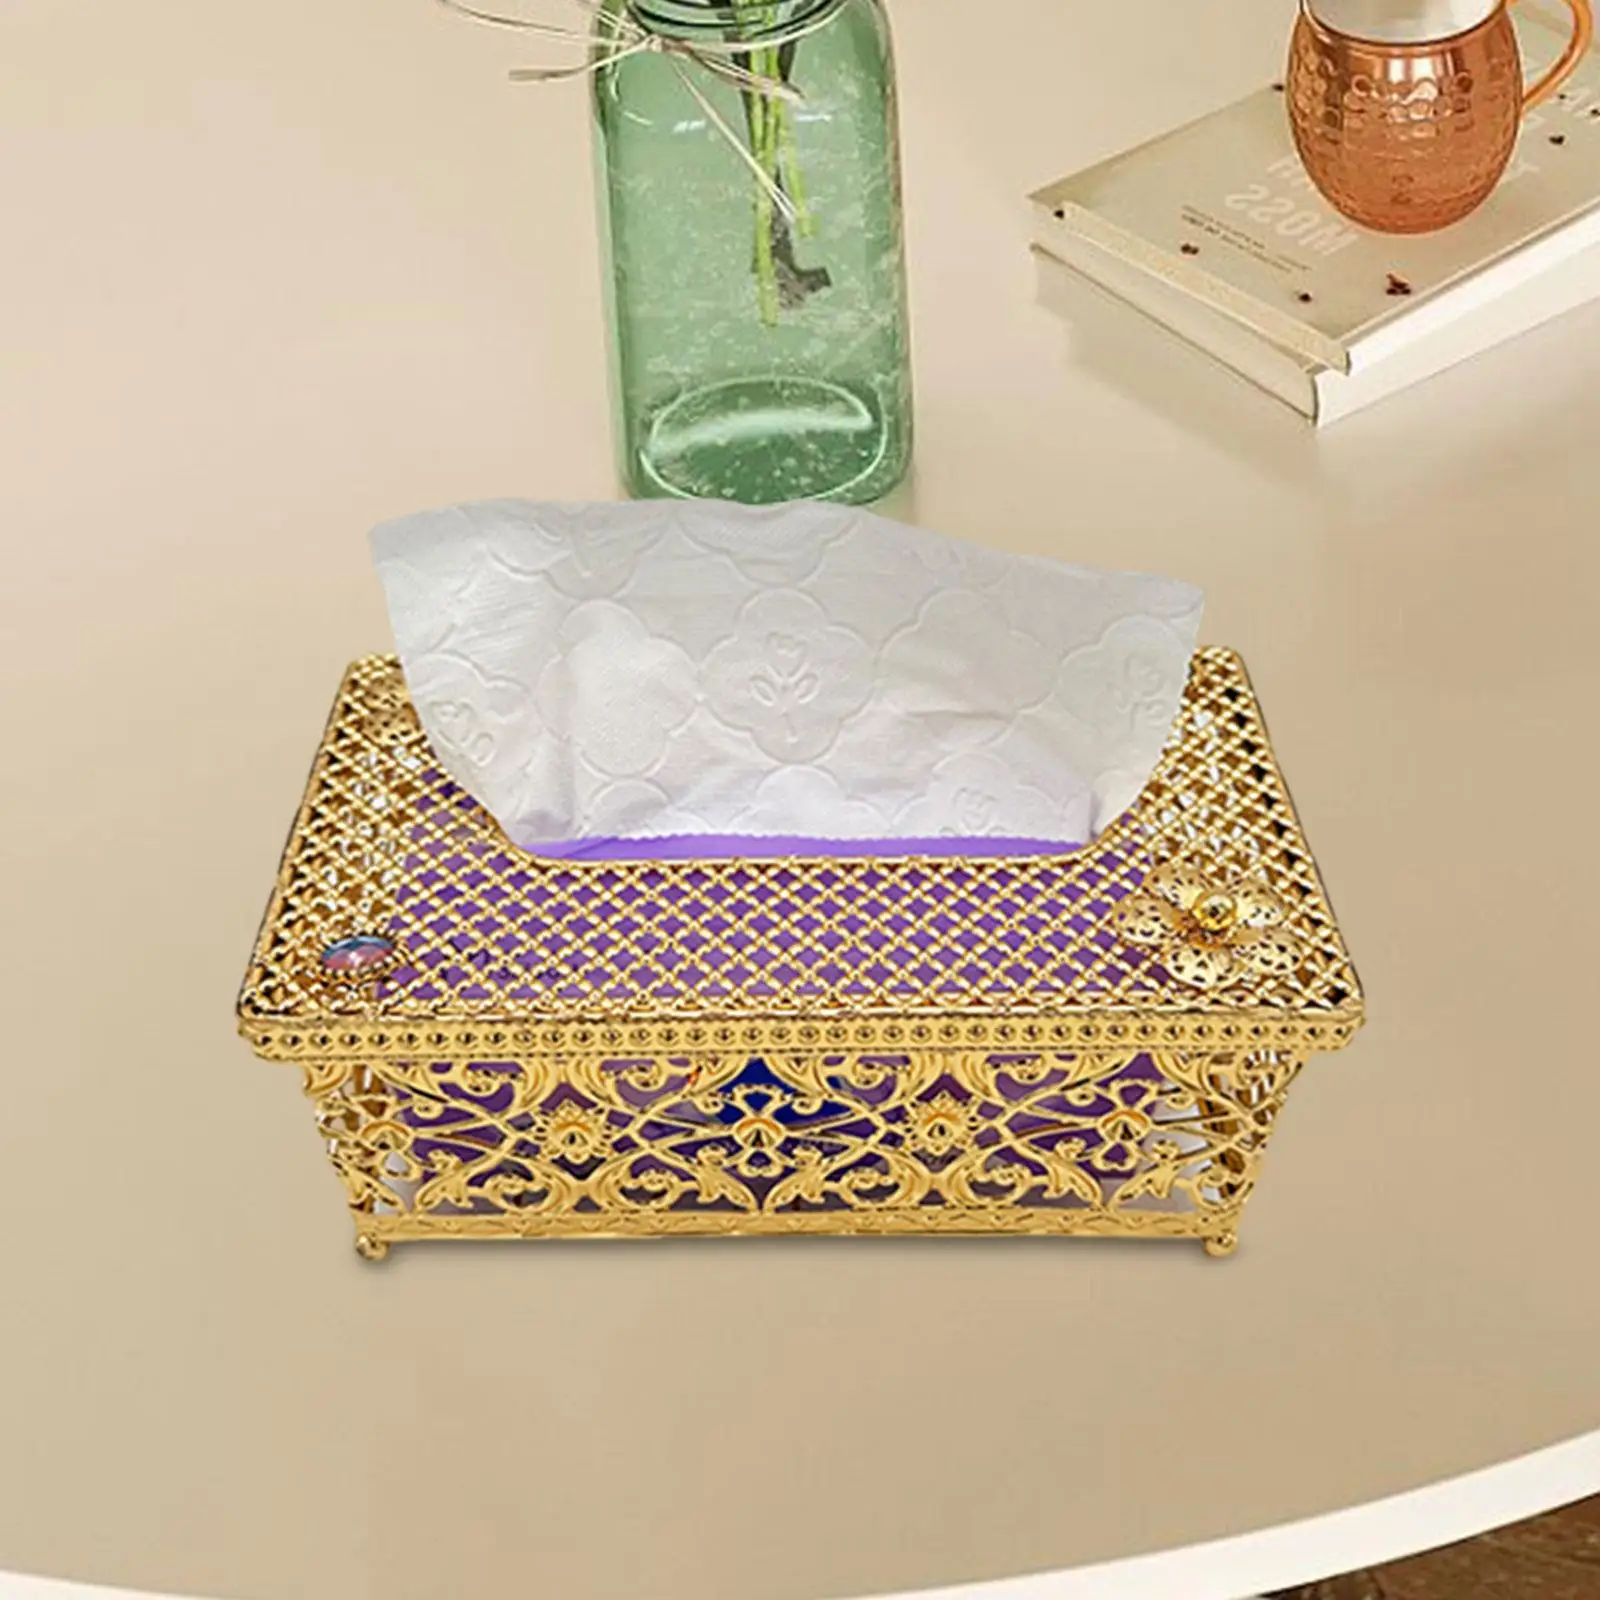 Facial Tissue Box Cover Bathroom Tissue Holders Paper Facial Tissue Box Cover Paper Storage Holder for Decor Countertop